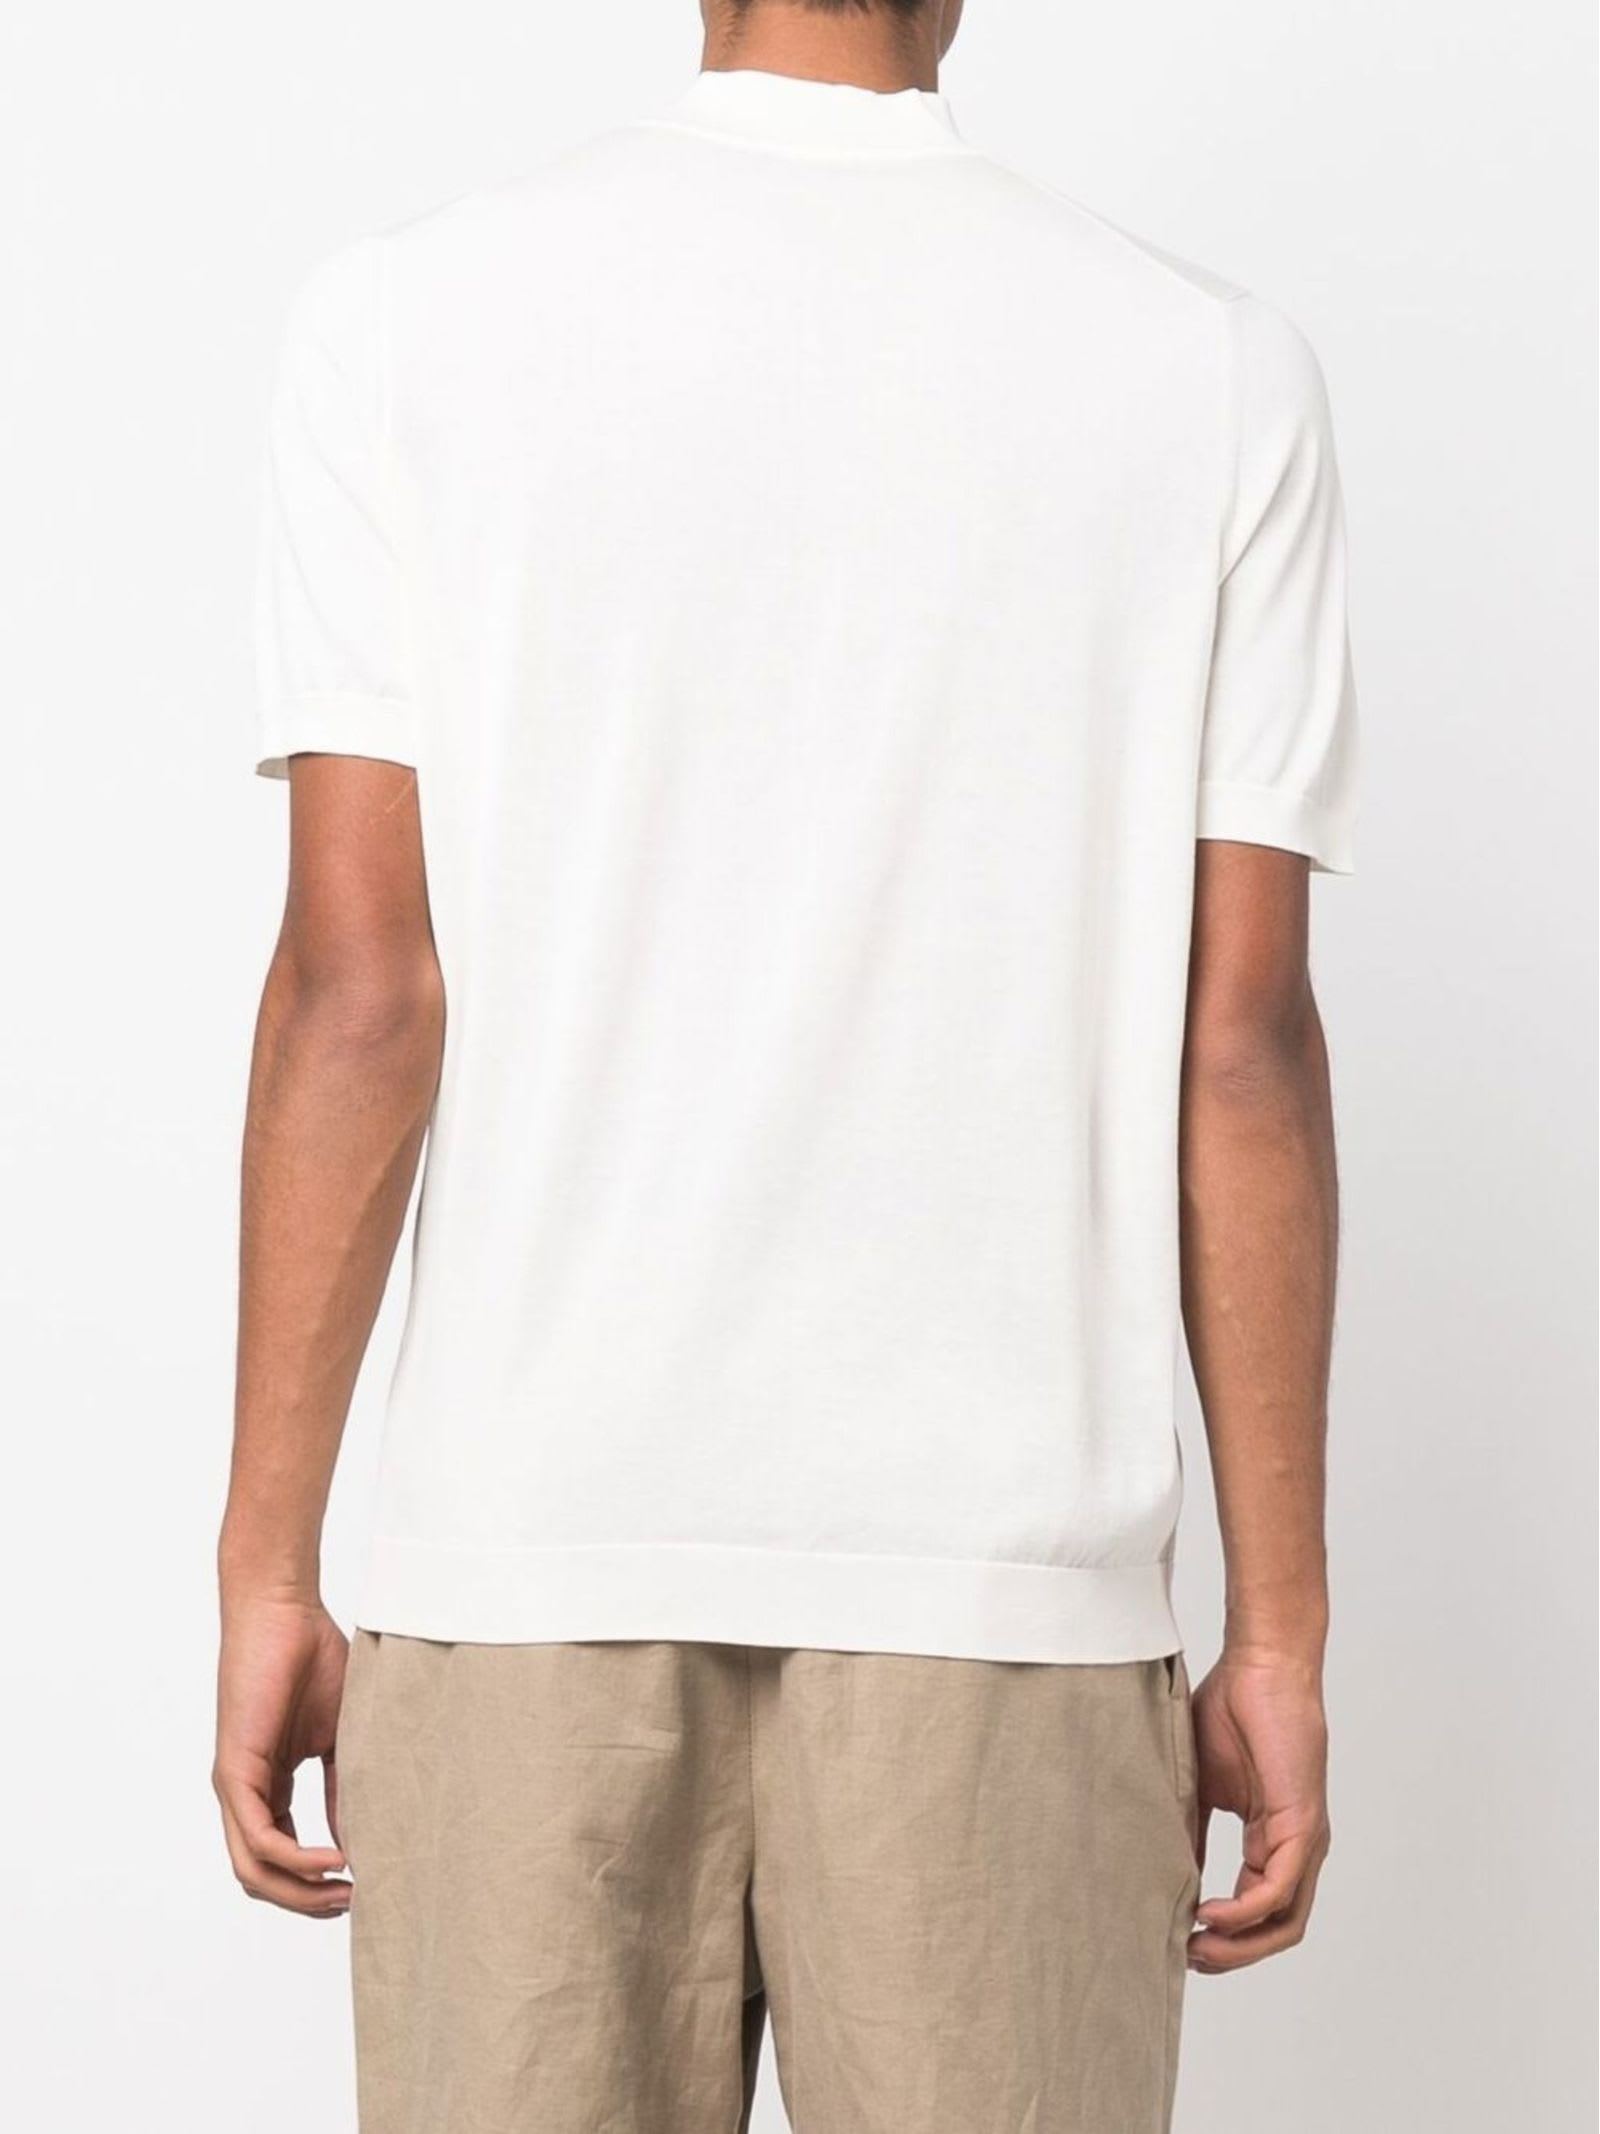 Shop Drumohr White Cotton T-shirt